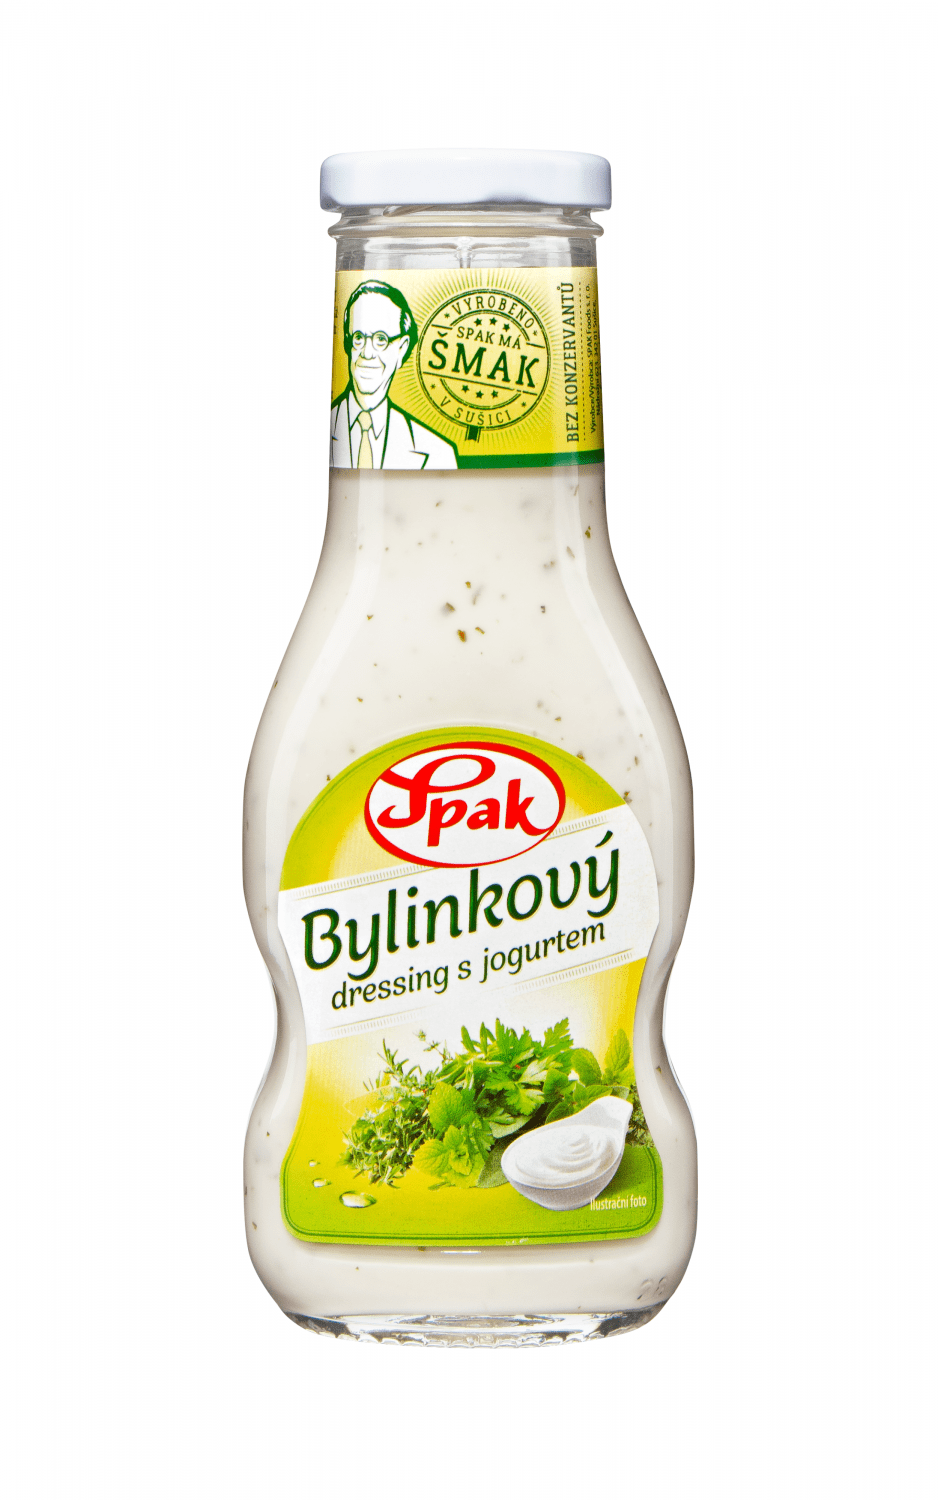 Bylinkovy-dressing-s-jogurtem-250-ml (1)